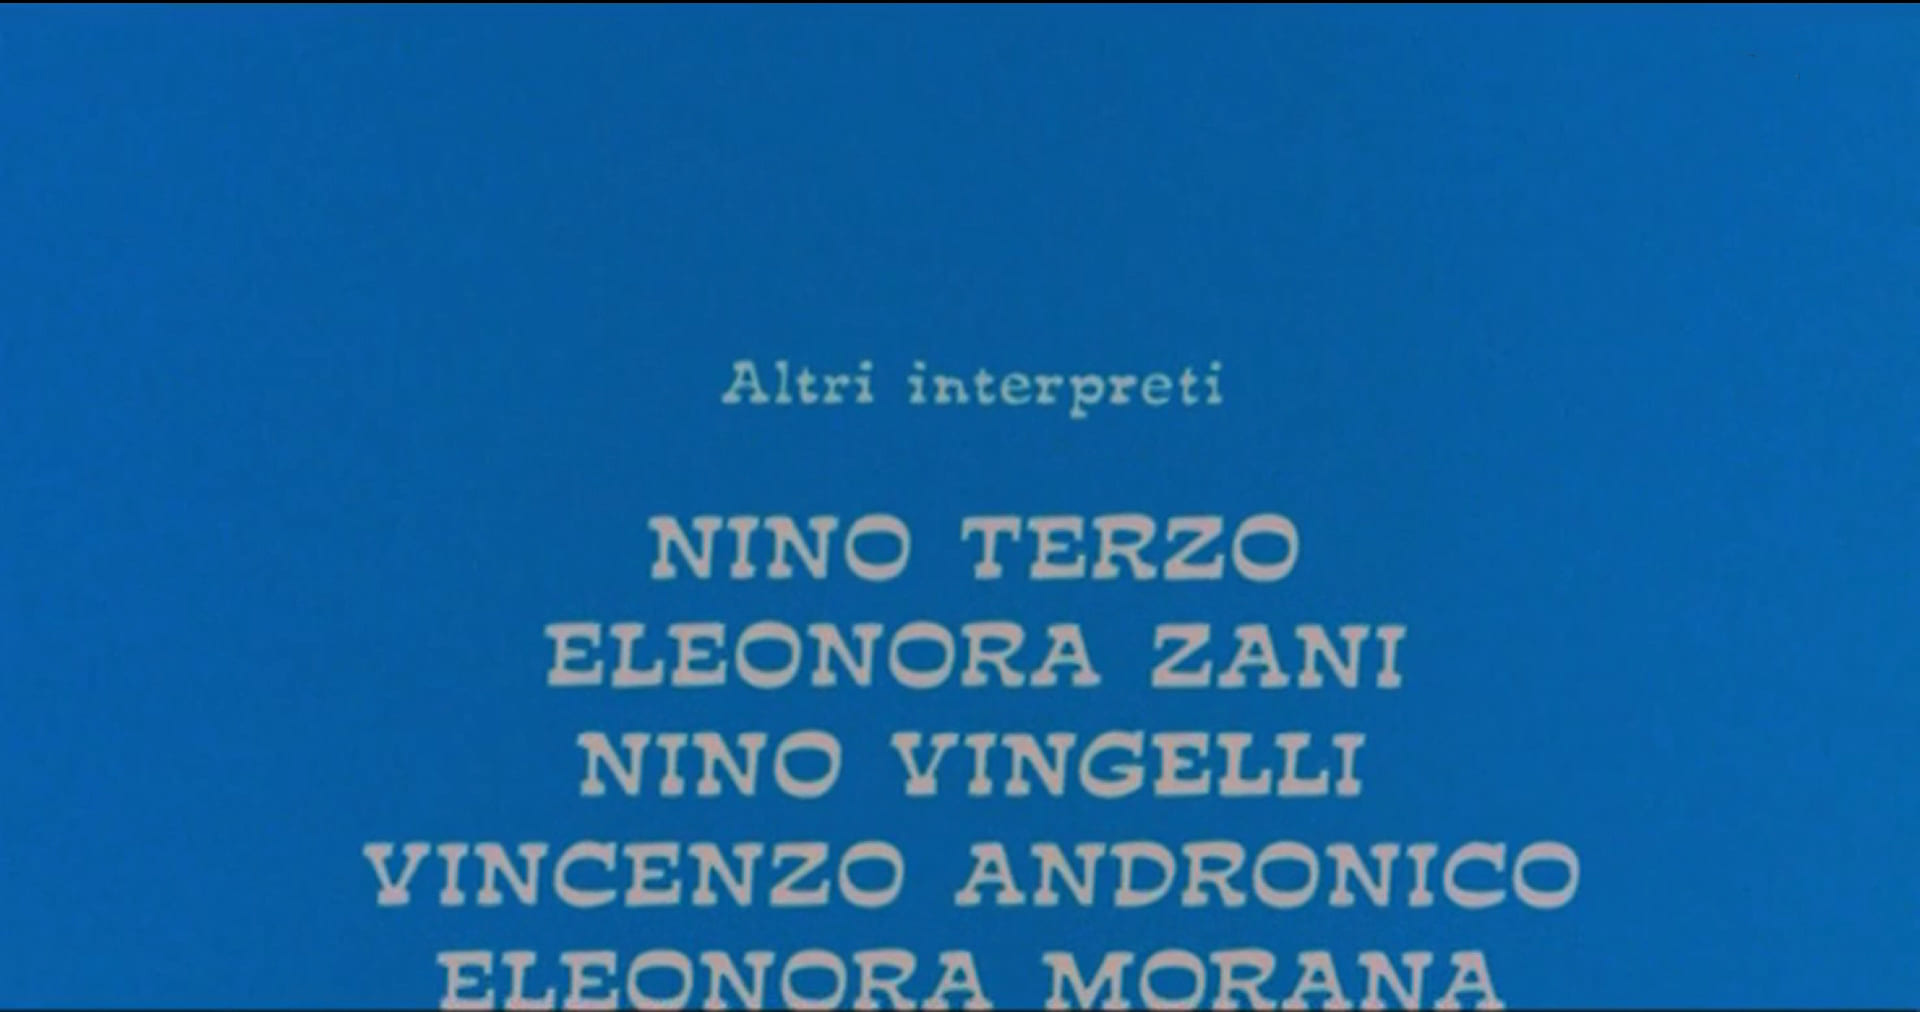 1972 _ Storia Di Fifa E Di Coltello Er Seguito D'er Più _ Zu' Nino Cliente Dell'arrotino _ Accreditato _ 05.jpg